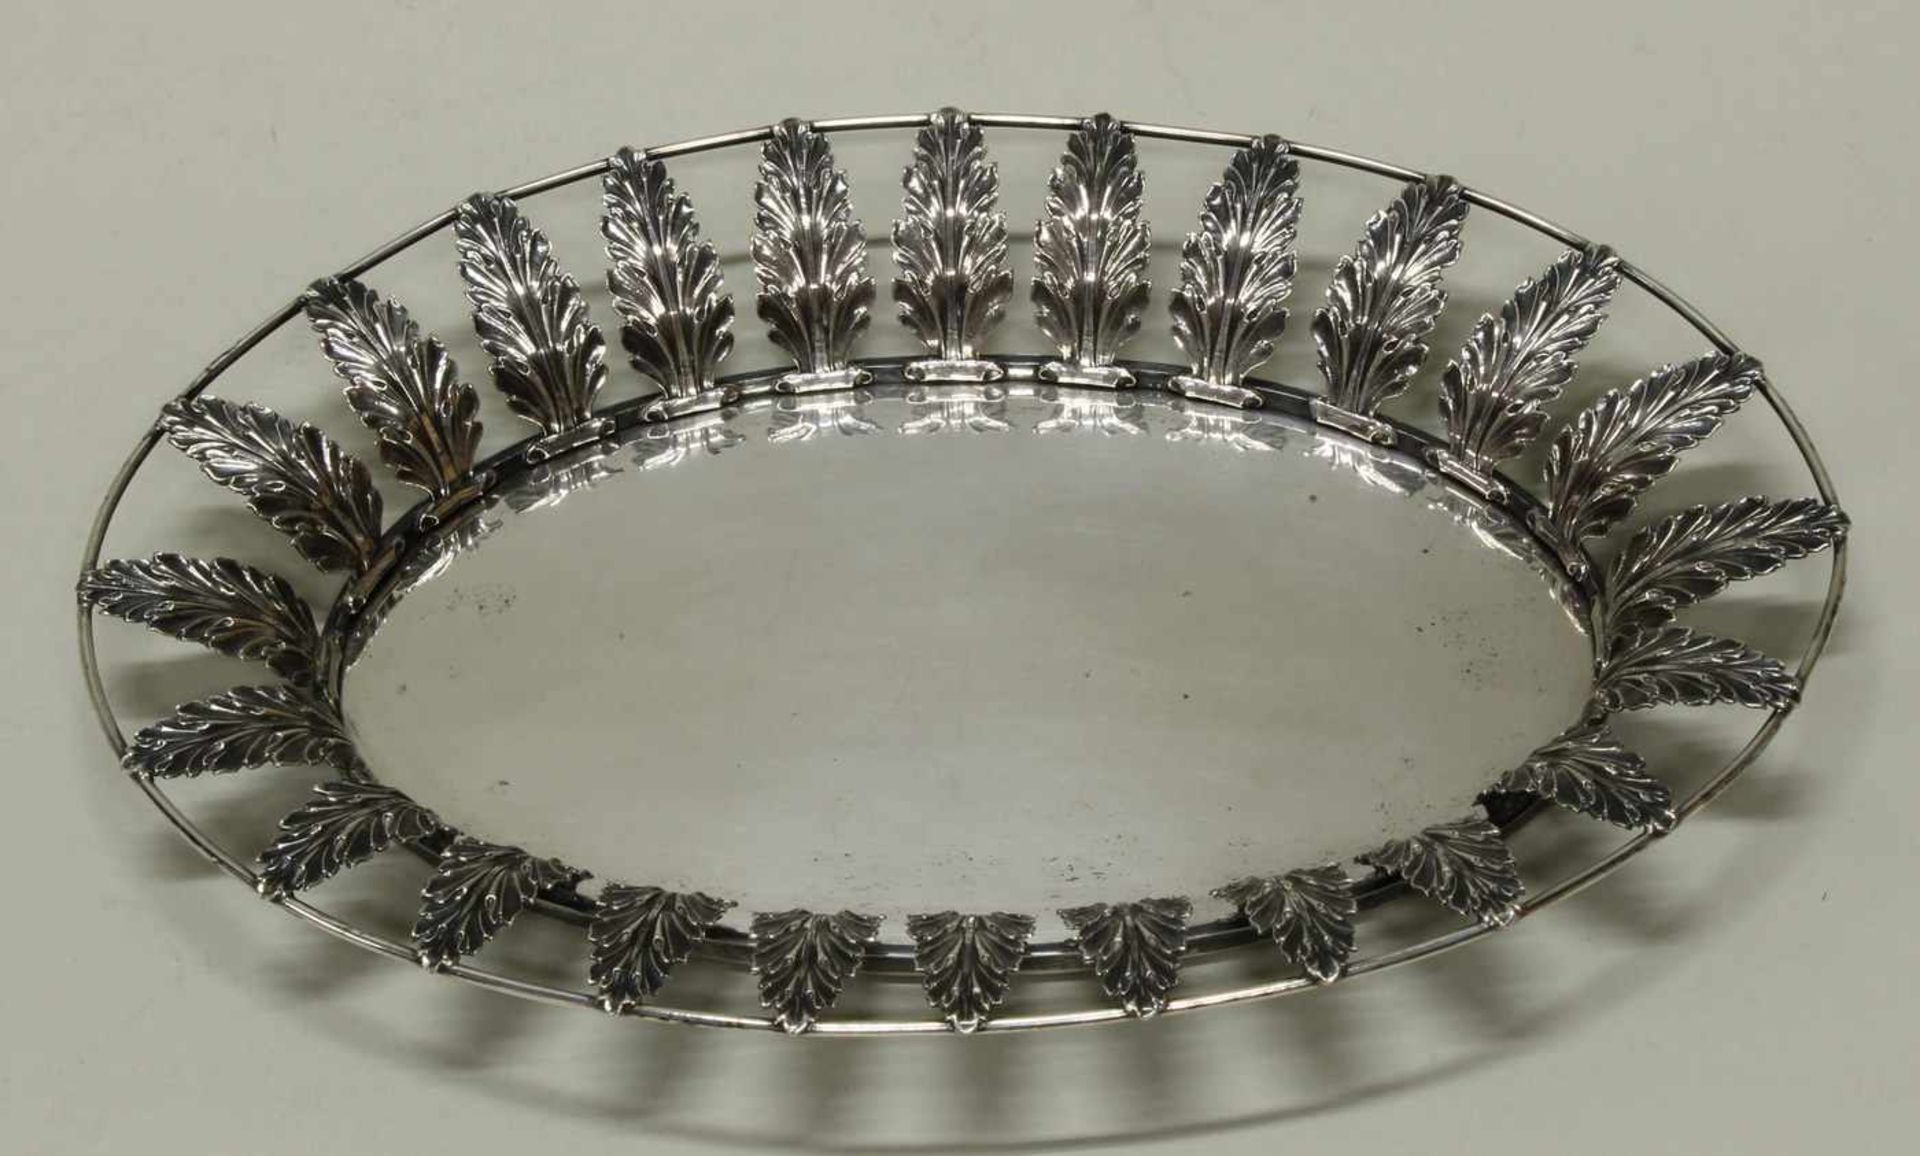 Korb, Silber, Danzig, um 1820, Carl Benjamin Schultz, oval, glatter Spiegel, durchbrochen